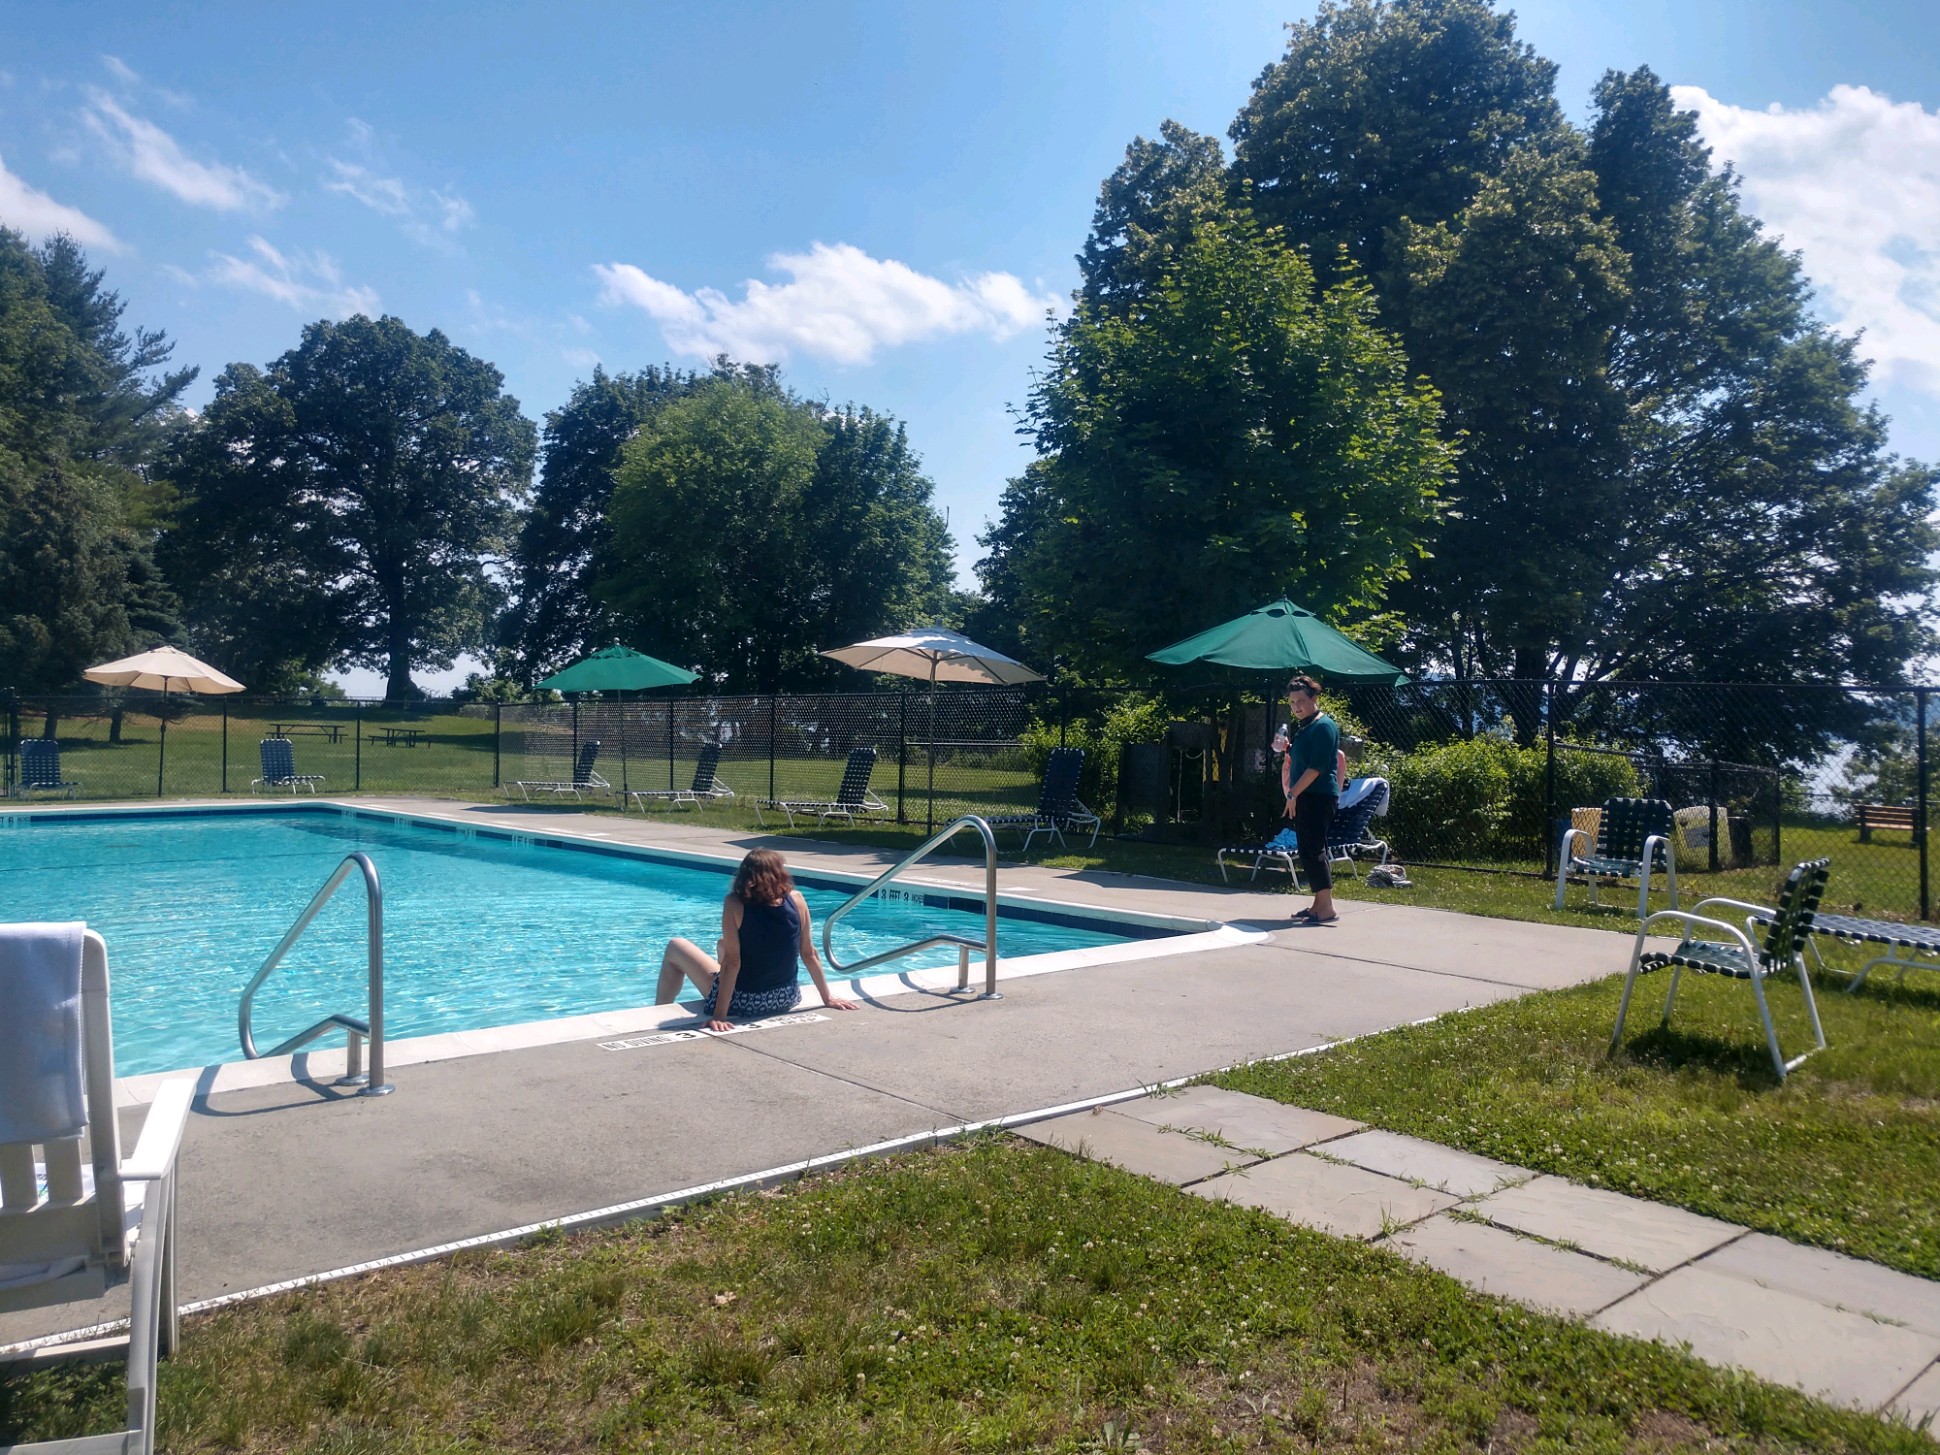 Pool in summer